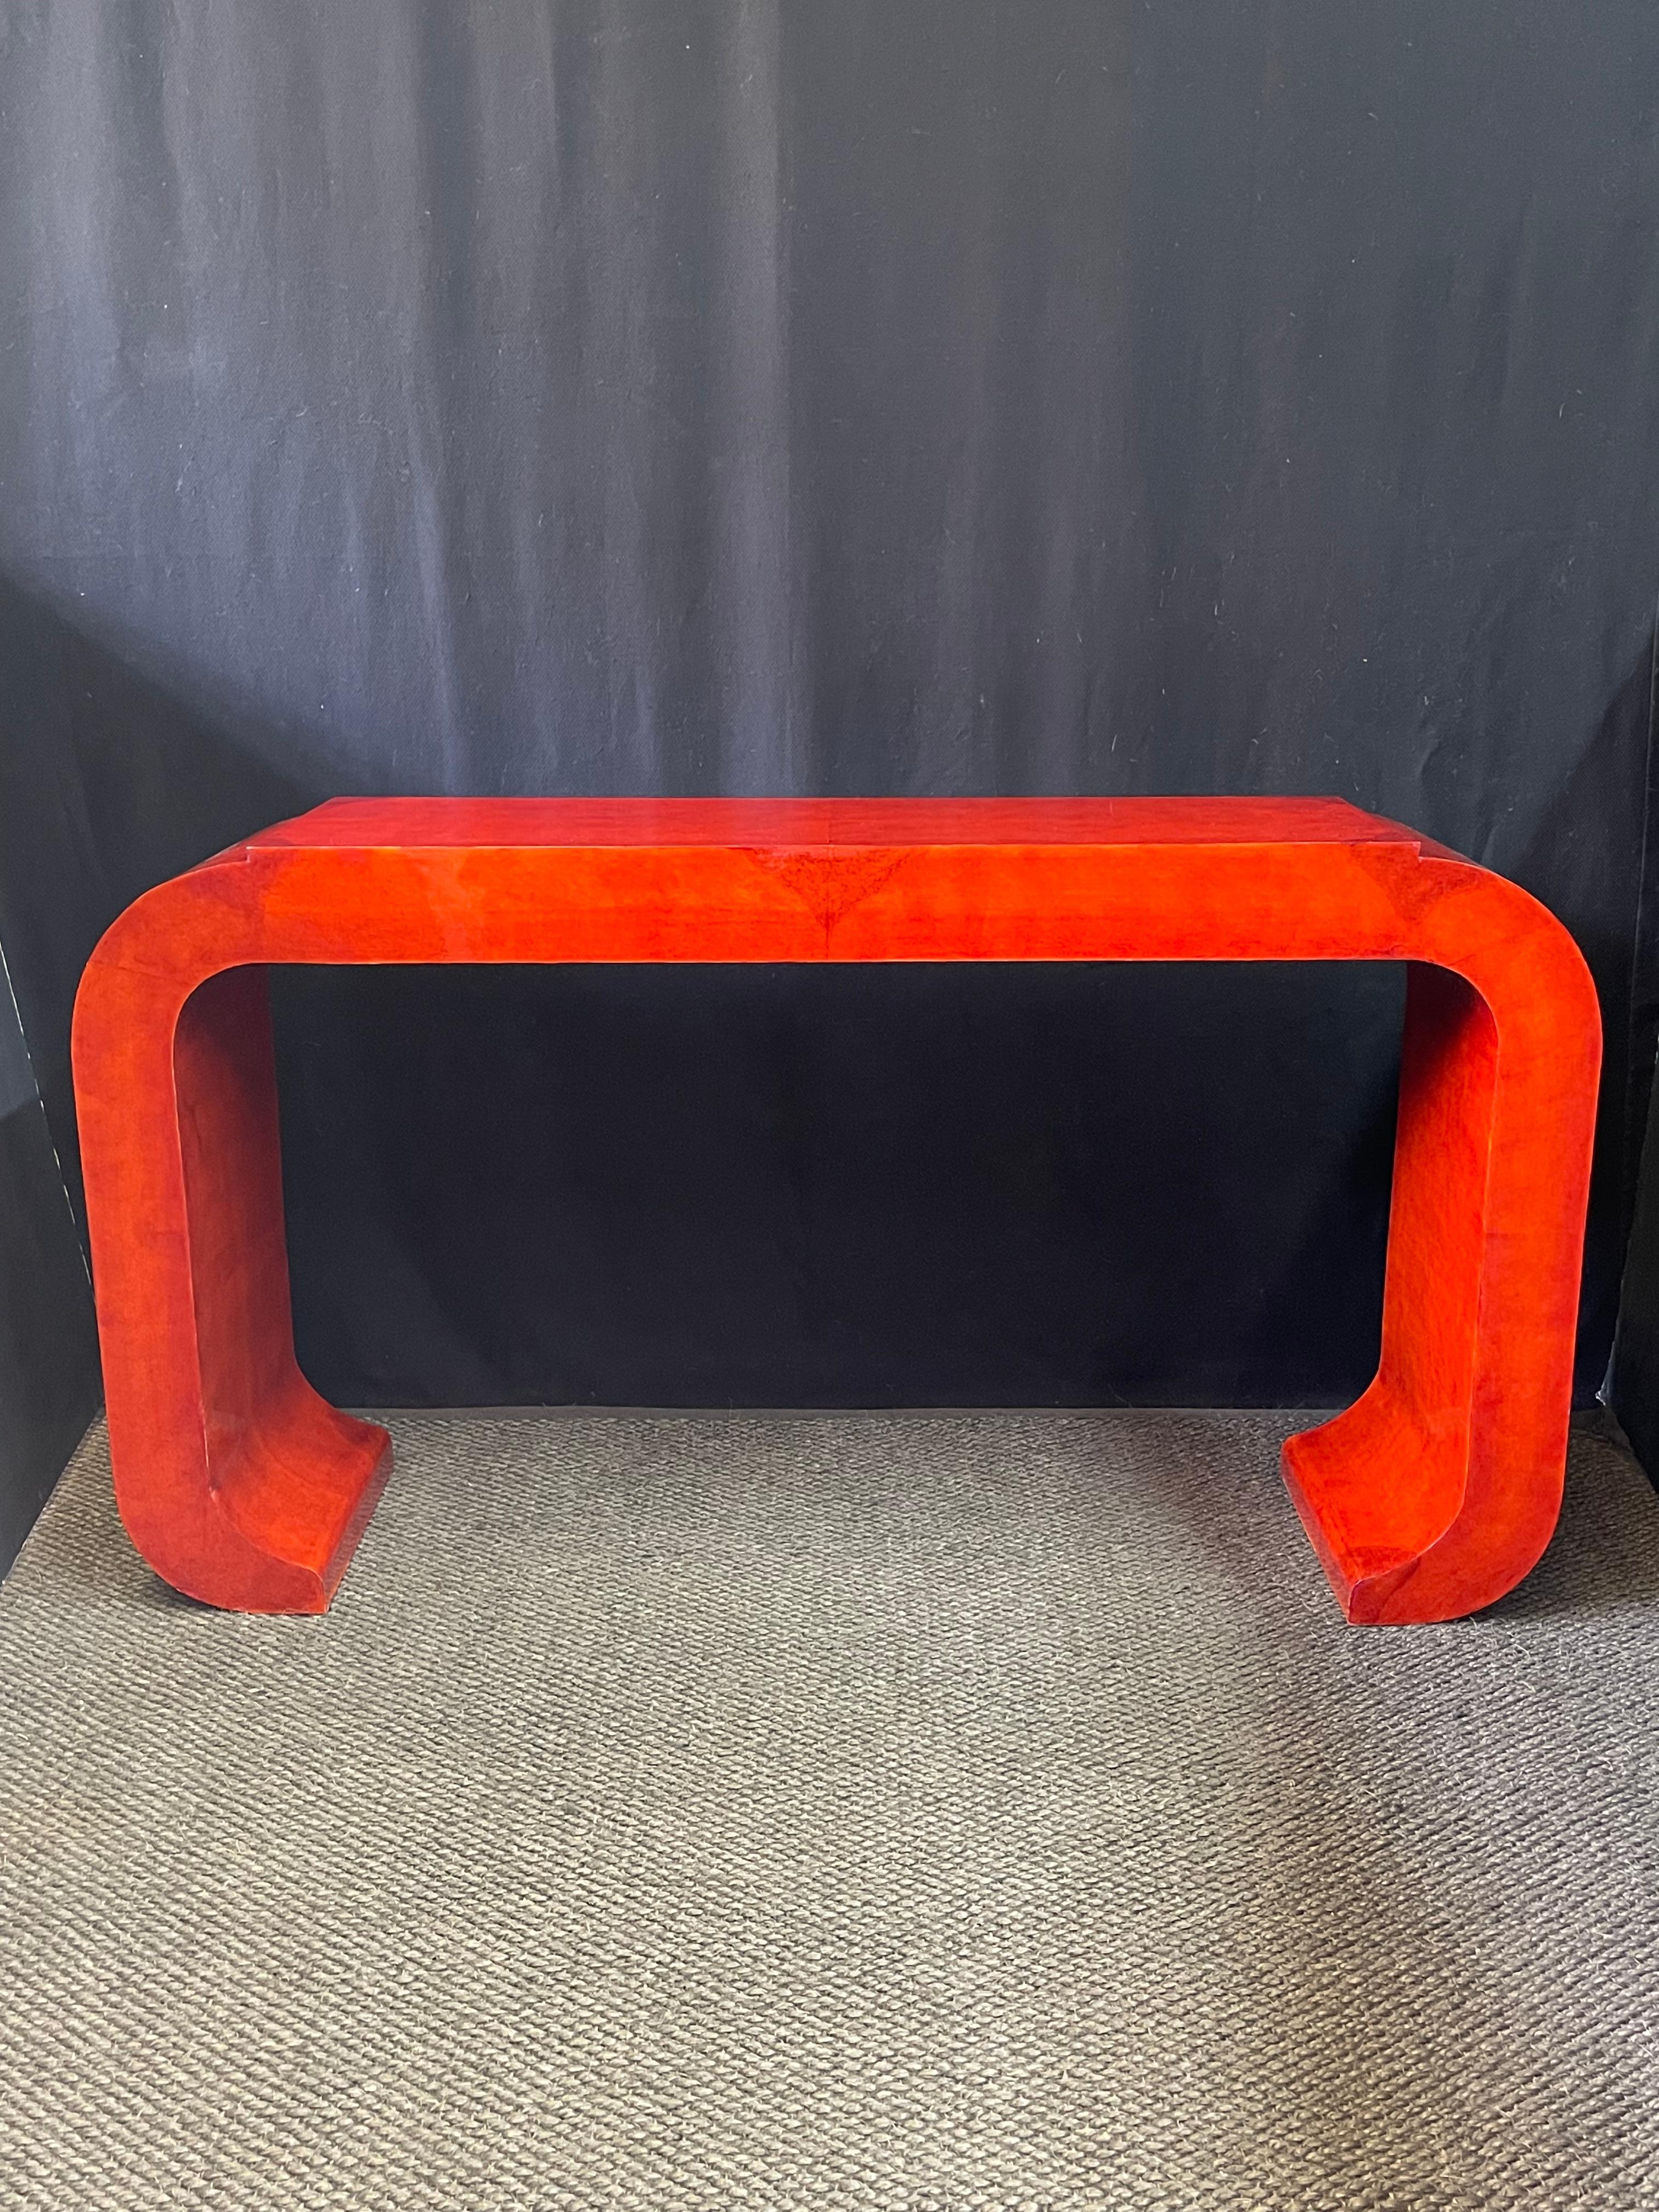 Superbe table console italienne du 21ème siècle créée à la manière de l'Art Déco avec des joints courbés et un plateau surélevé. La table est finie dans une laque rouge brillante et riche sur un placage de bois ronce. Elle ferait une excellente